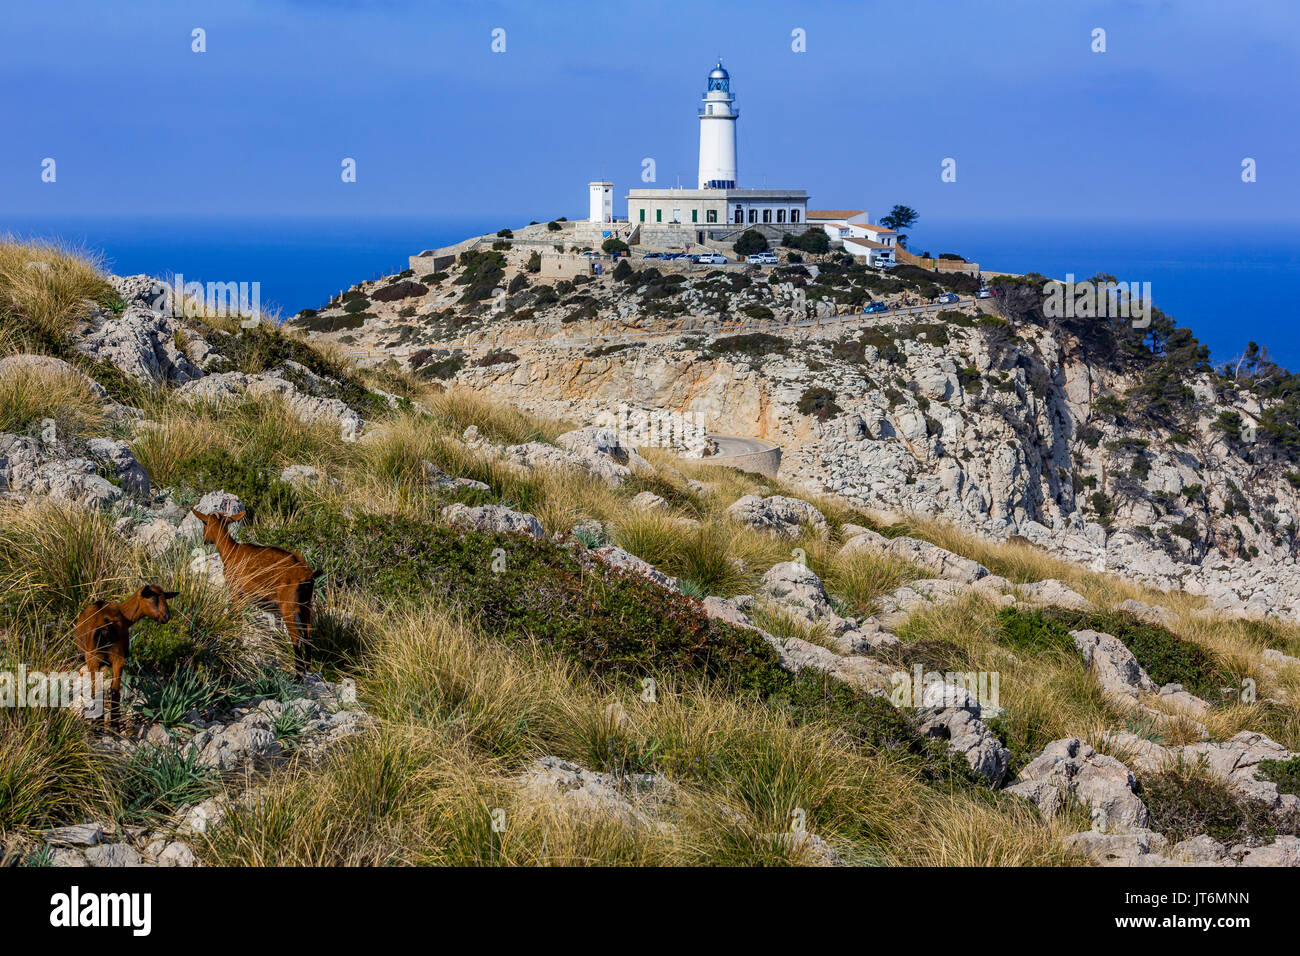 Formentor Lighthouse on Cap de Formentor, Majorca, Balearic Islands, Spain Stock Photo